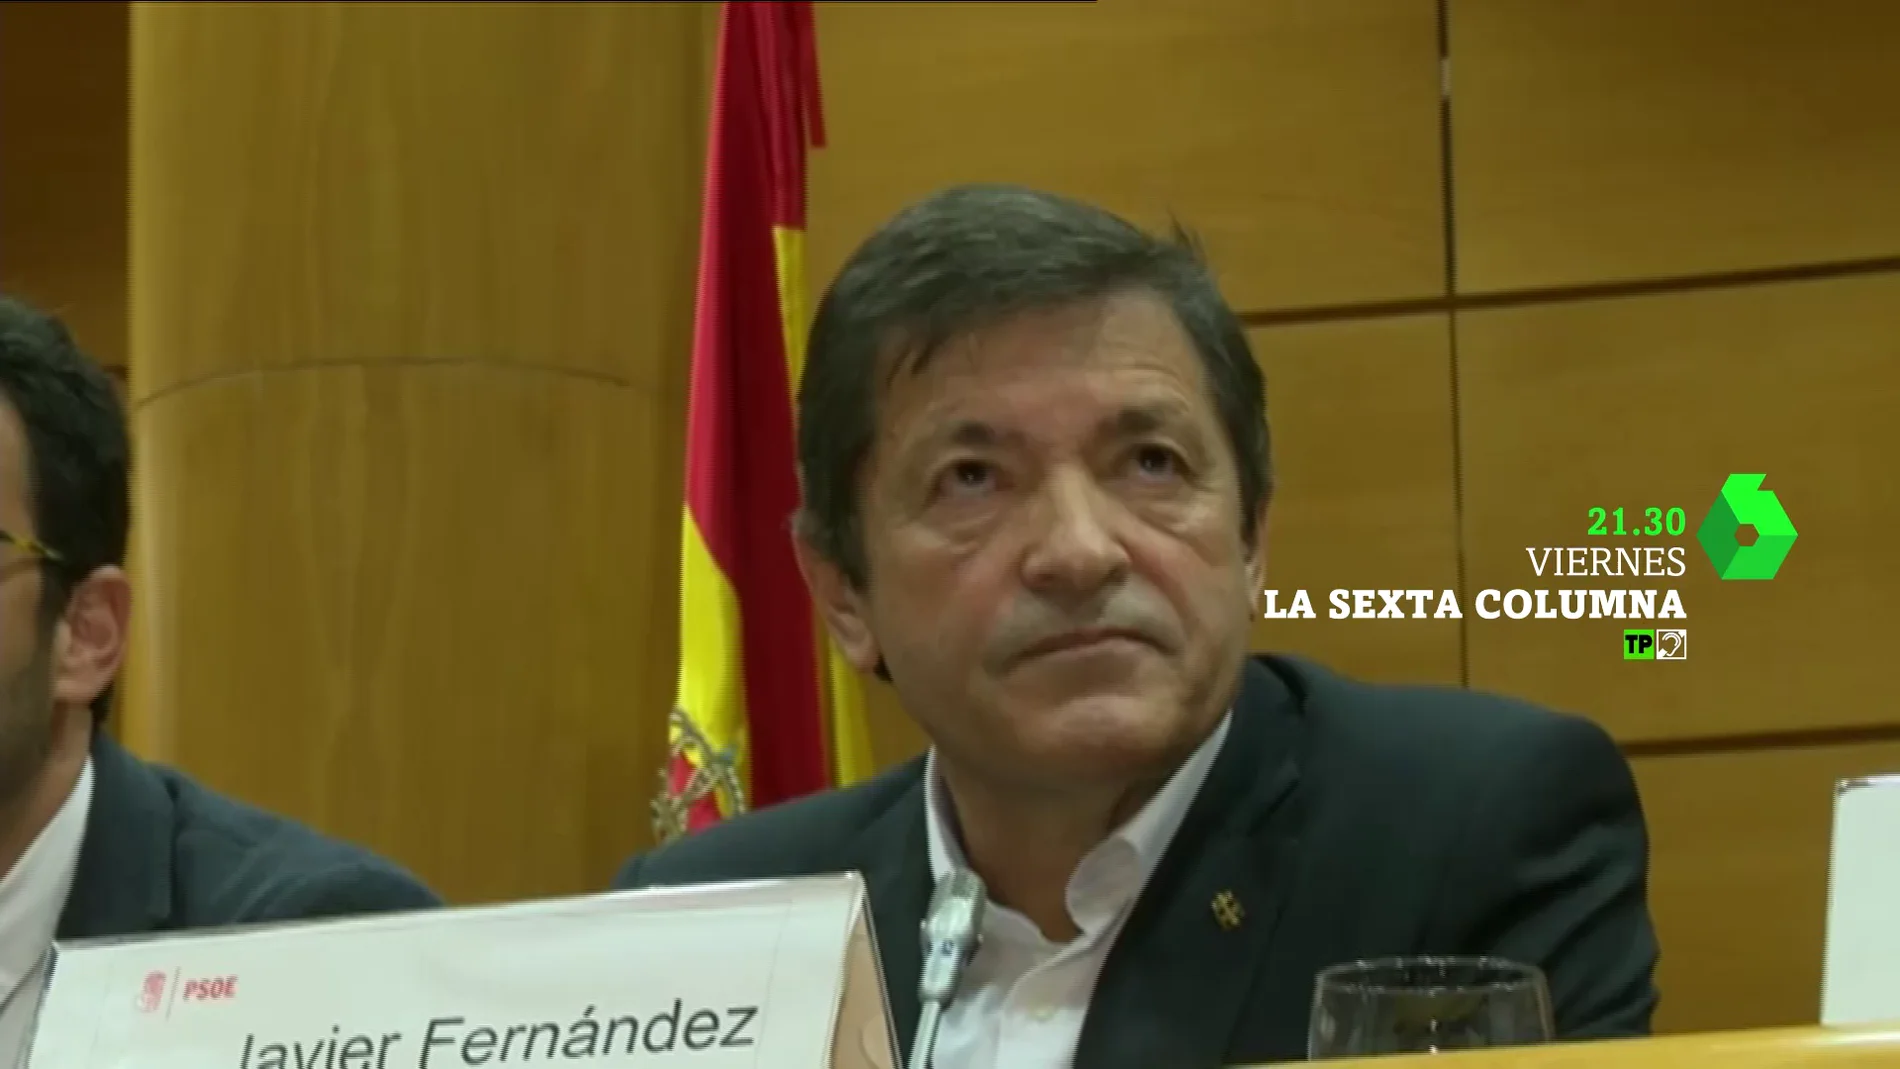  ¿Abstención o elecciones? El PSOE ante la decisión más difícil de su historia, este viernes en laSexta Columna